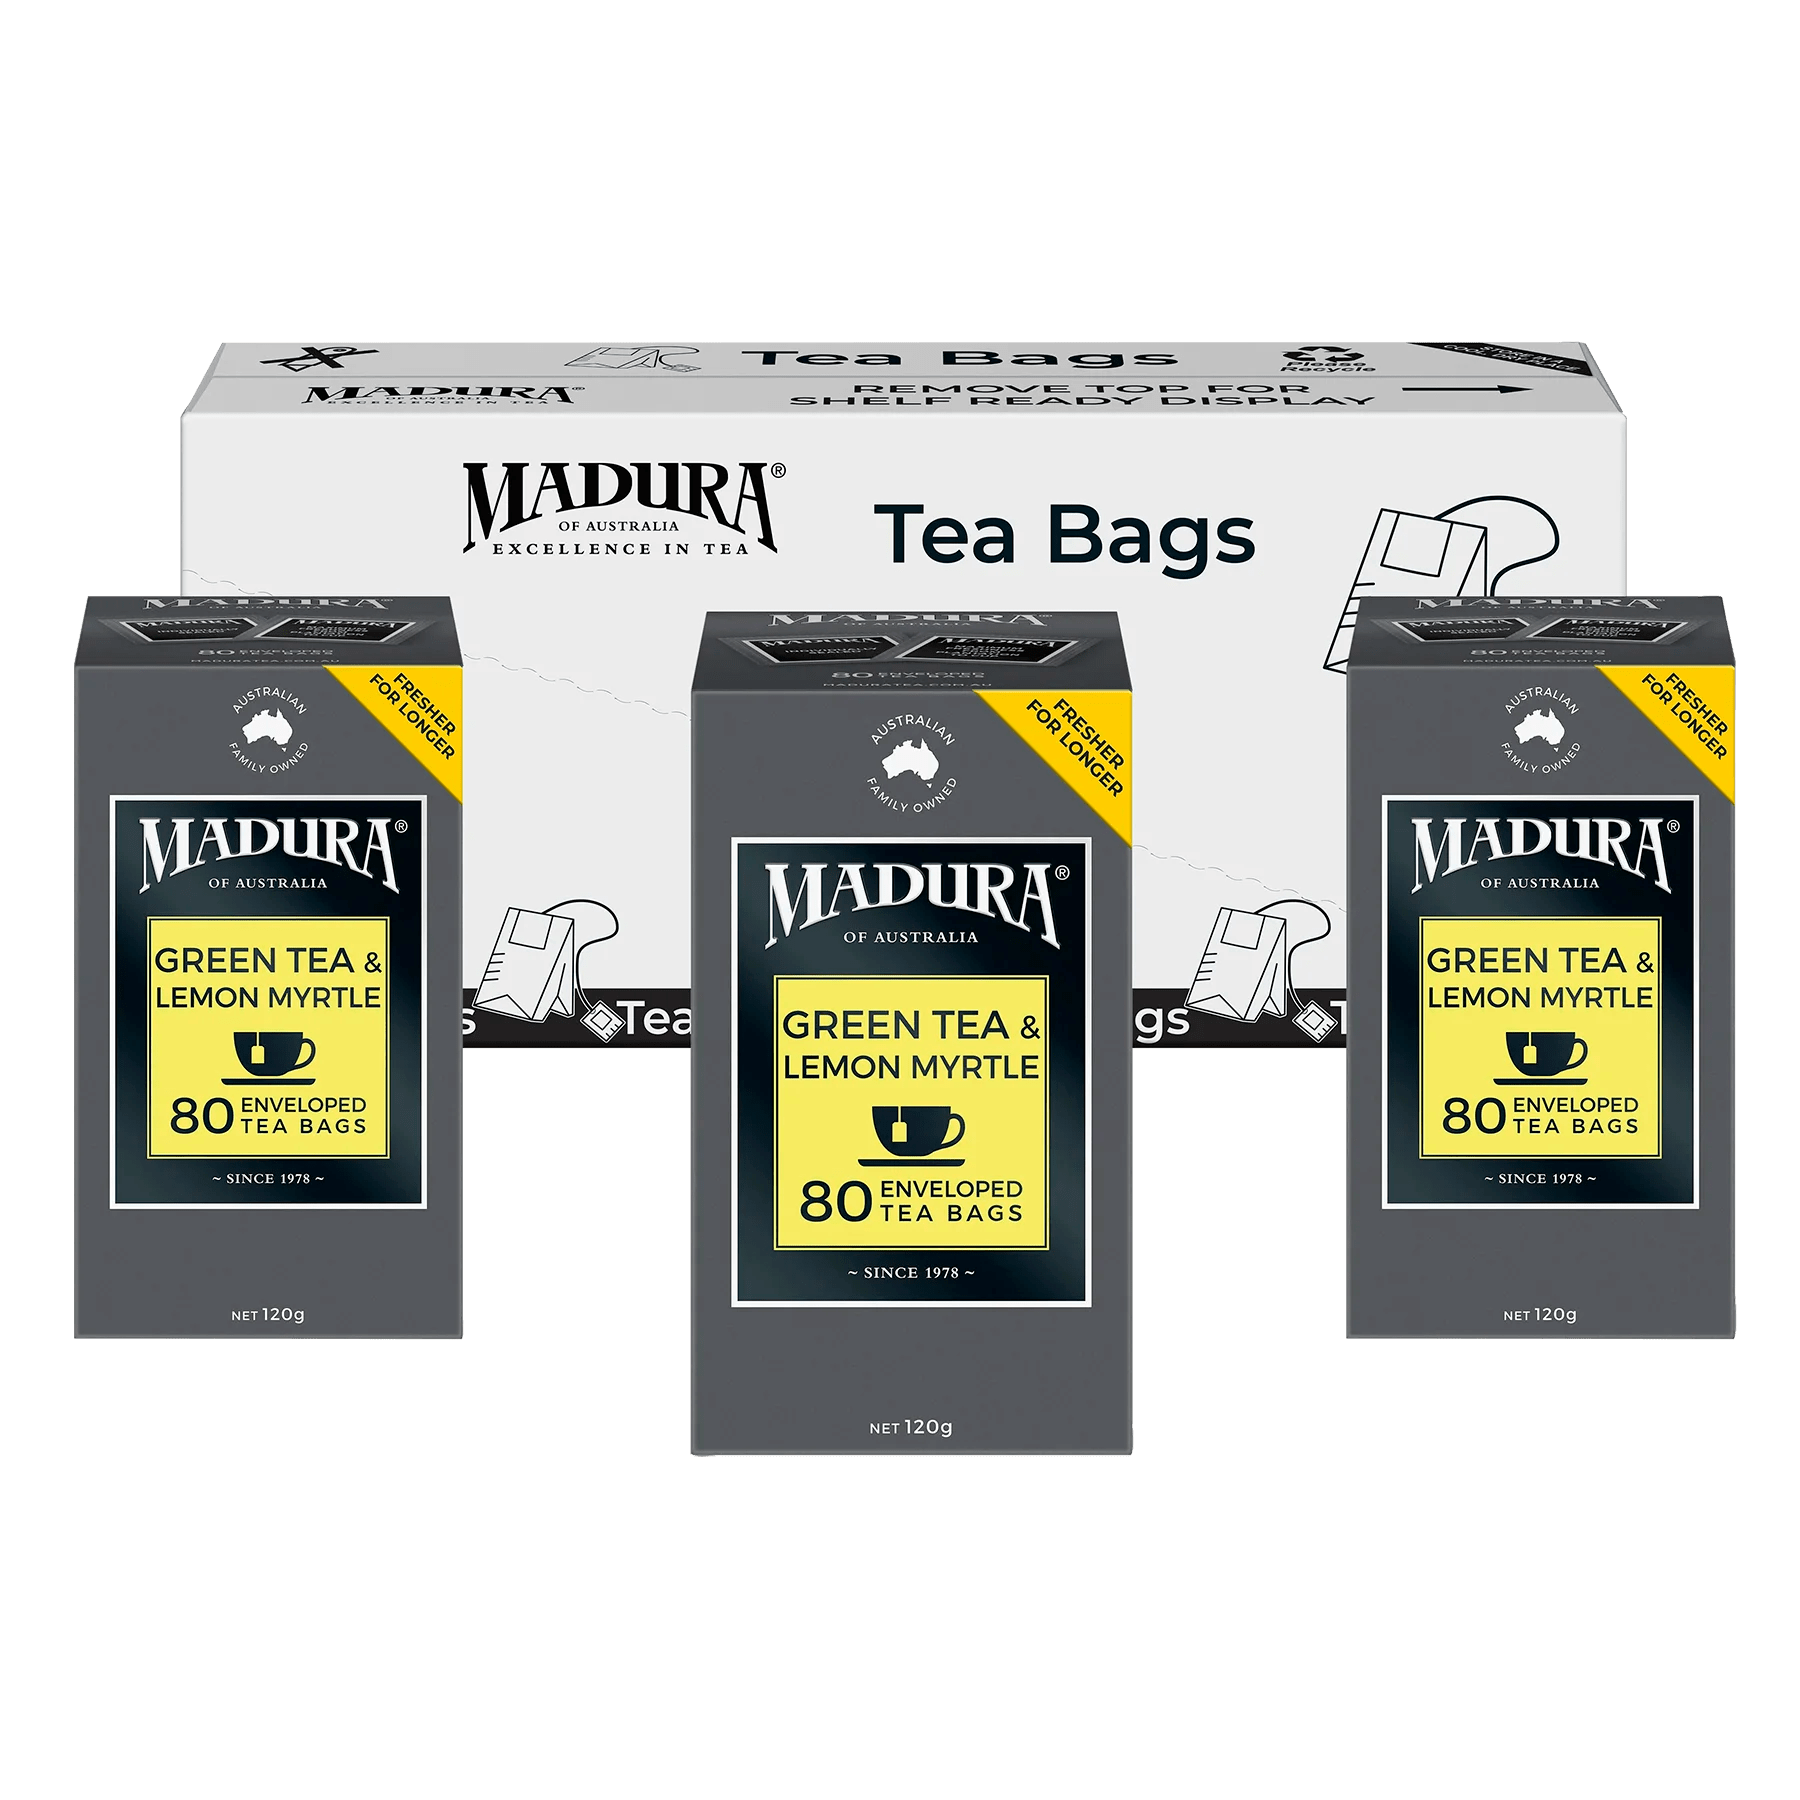 Green Tea & Australian Lemon Myrtle 80 Enveloped Tea Bags - Madura Tea